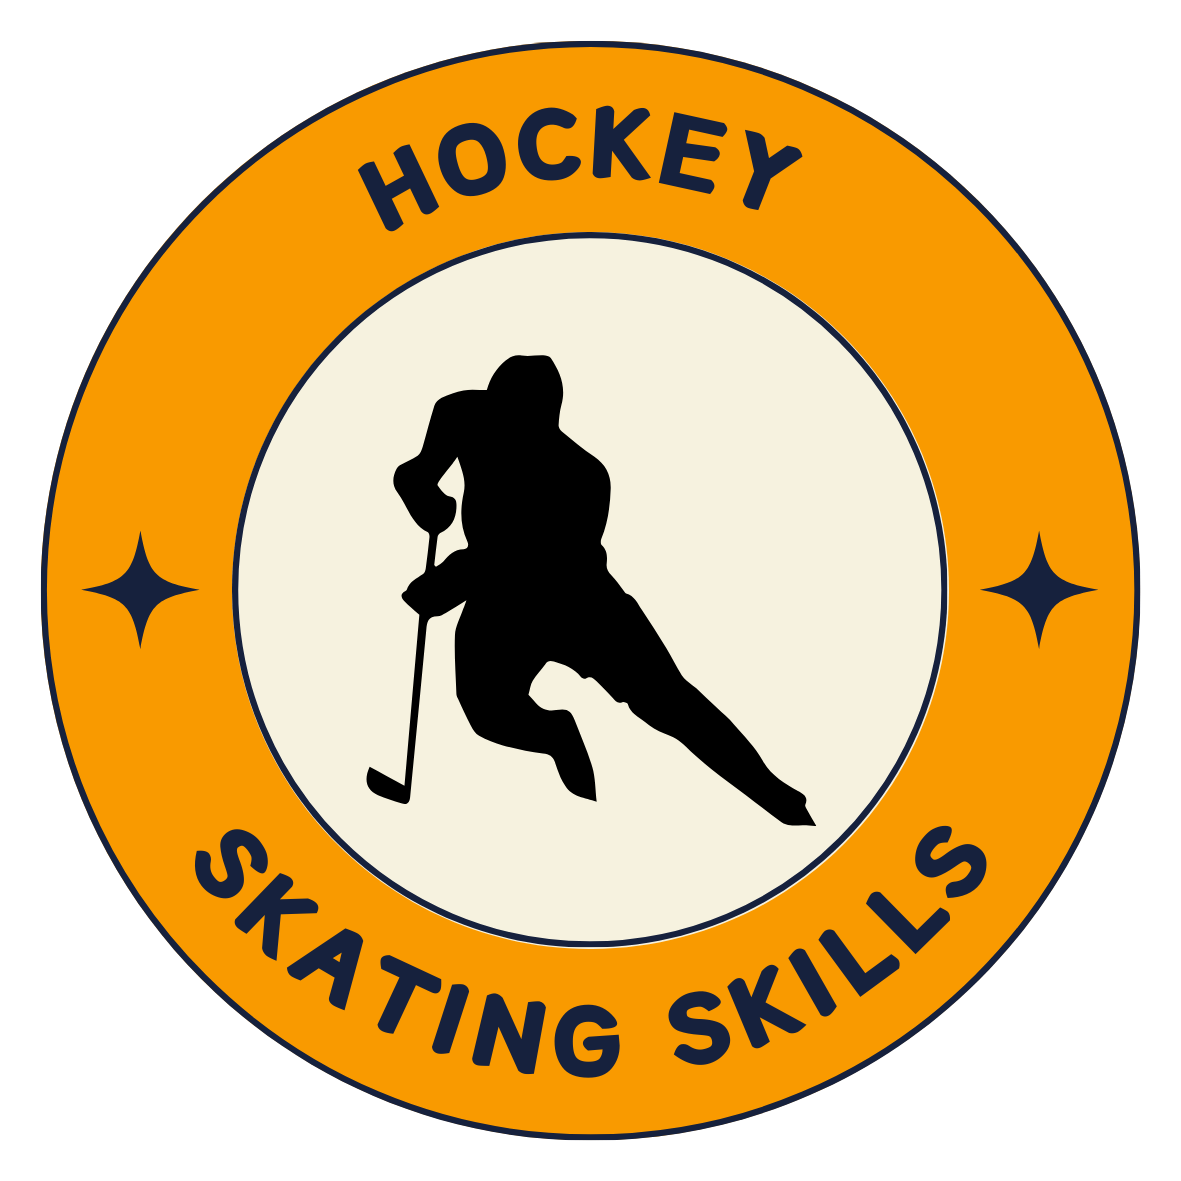 hockey-skating-skills-icon-orange